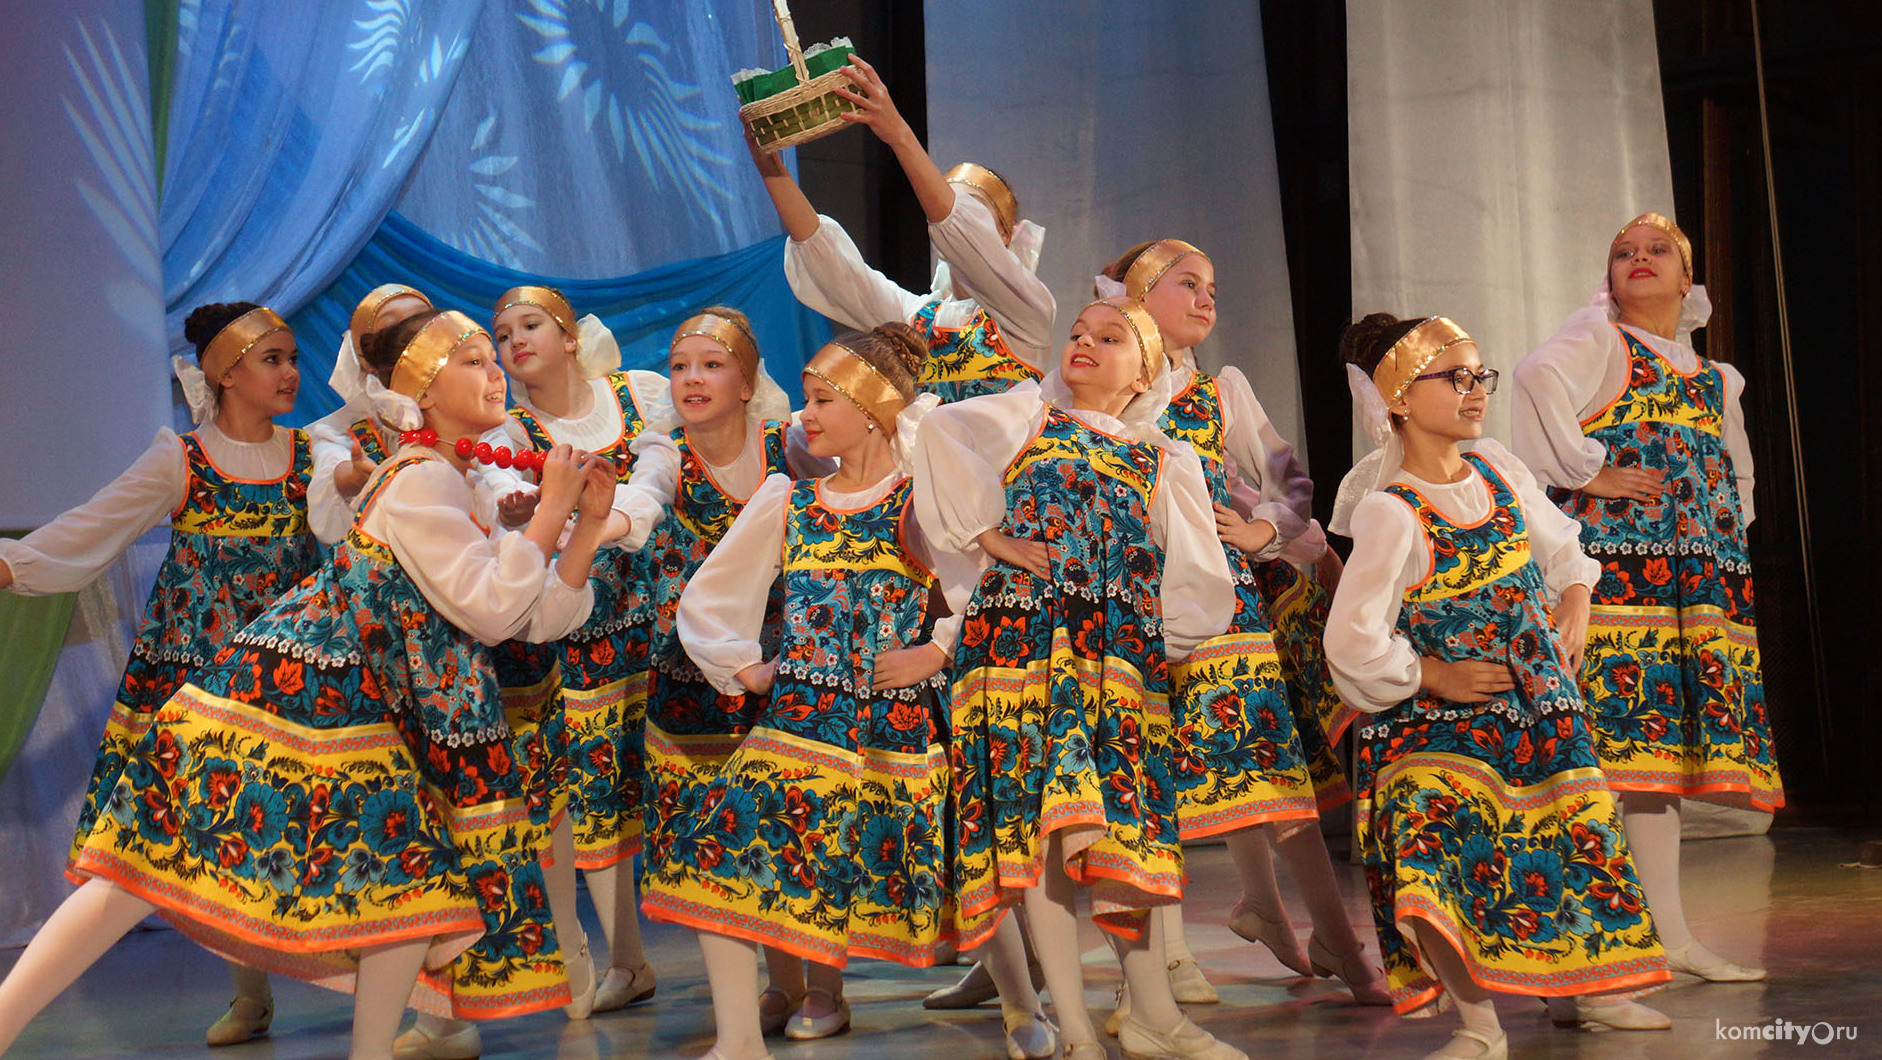 Более 850-ти школьников собрал фестиваль «Времена года» в Комсомольске-на-Амуре